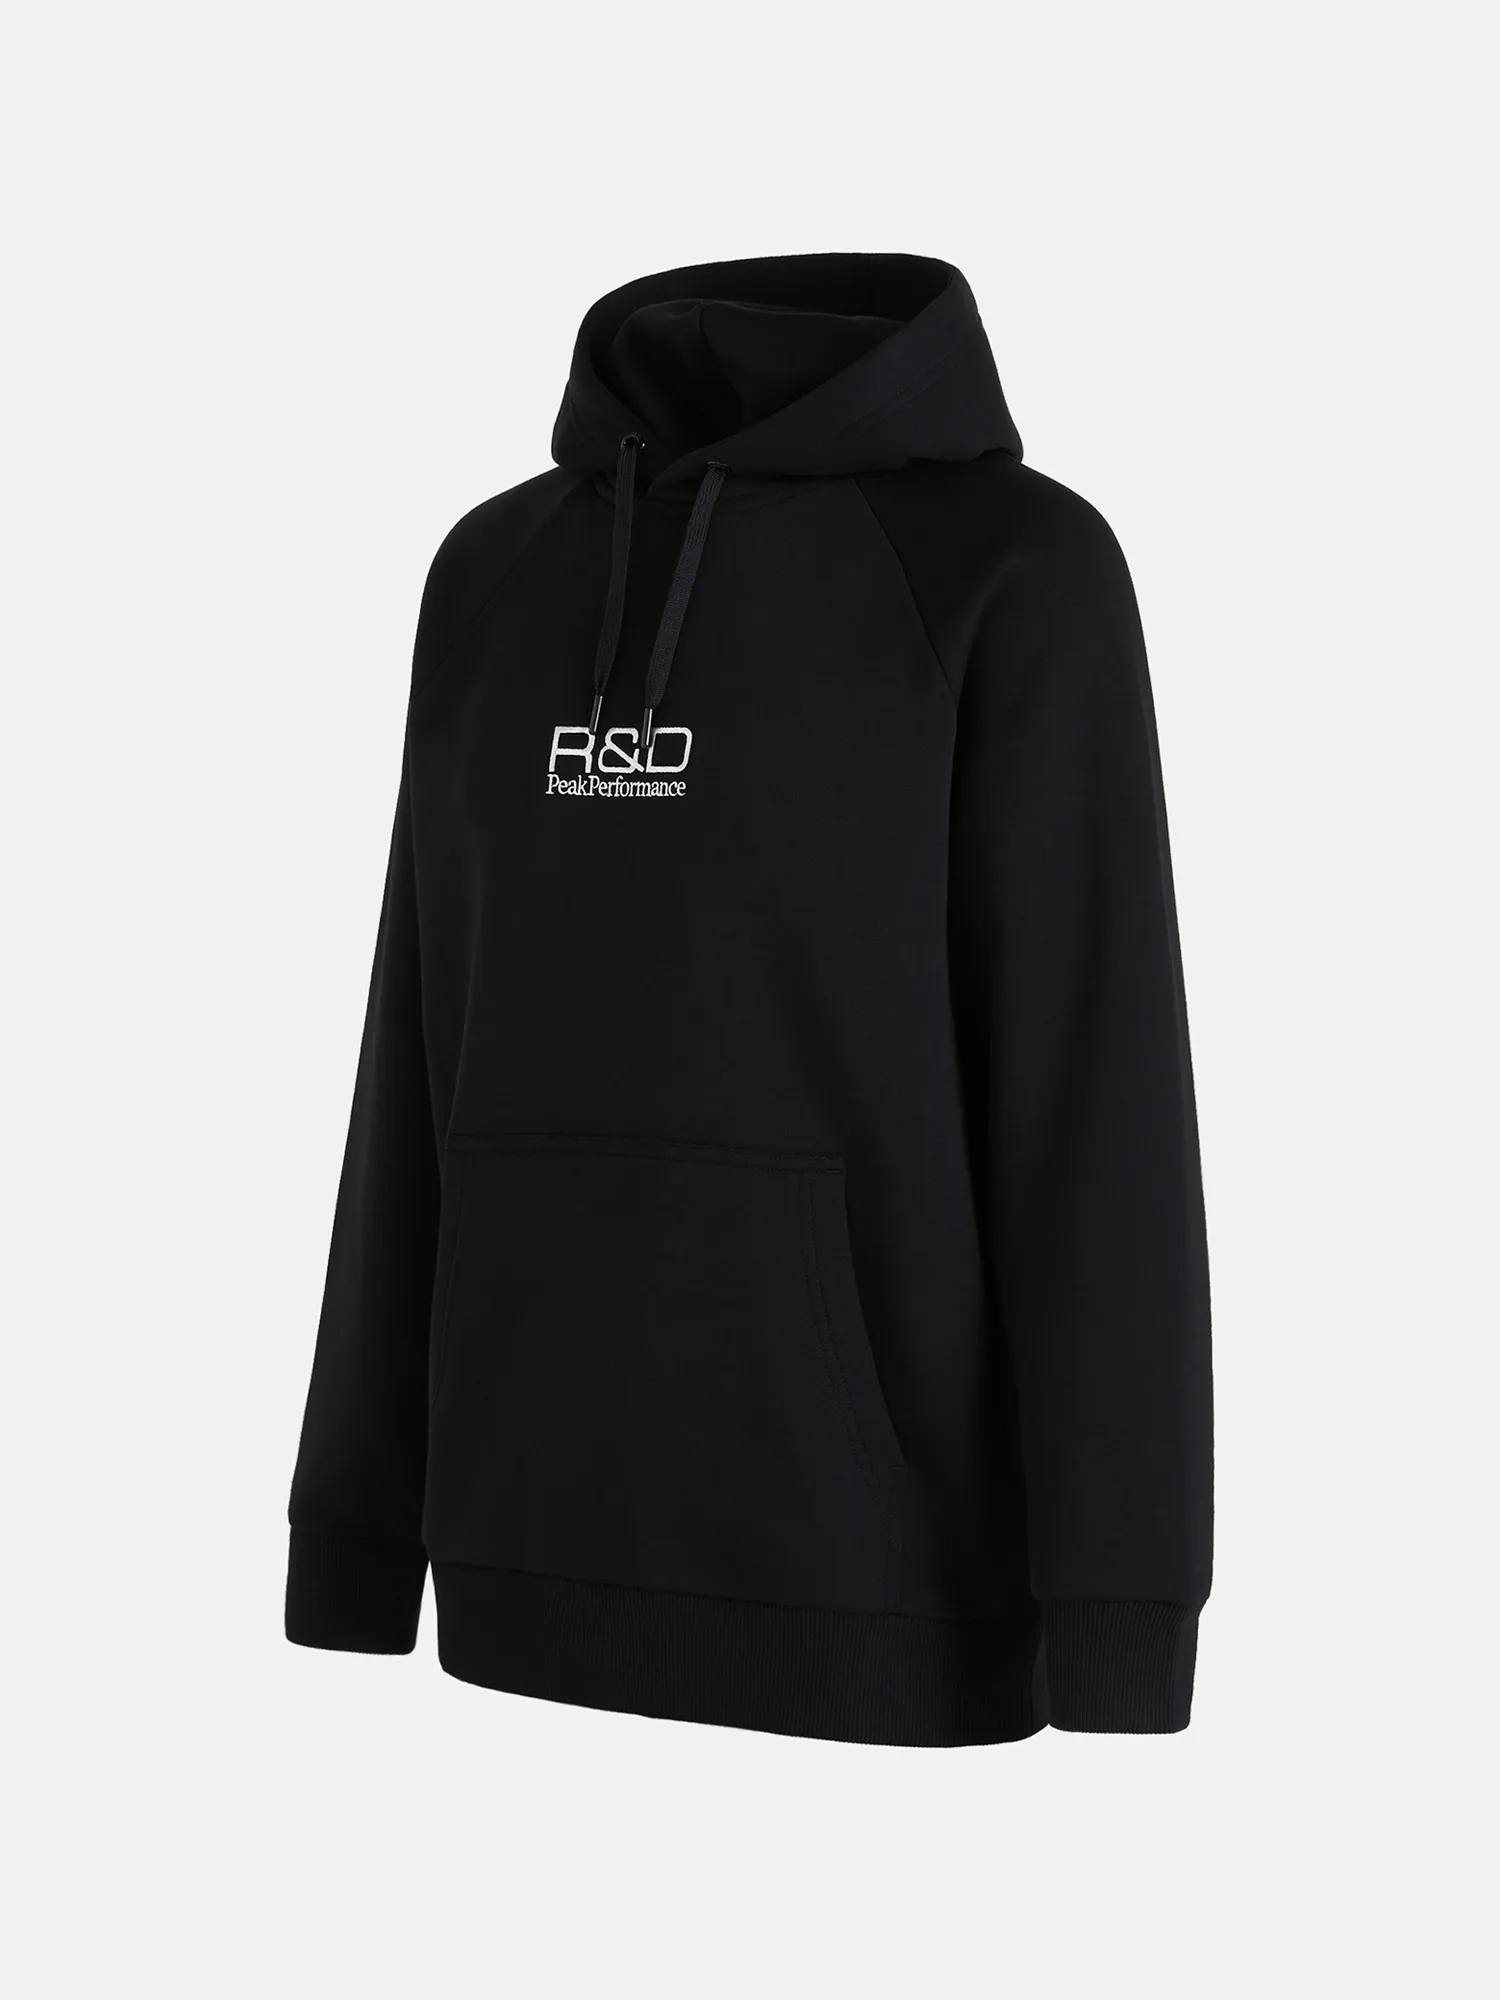 Men’s R&D hoodie Black XL